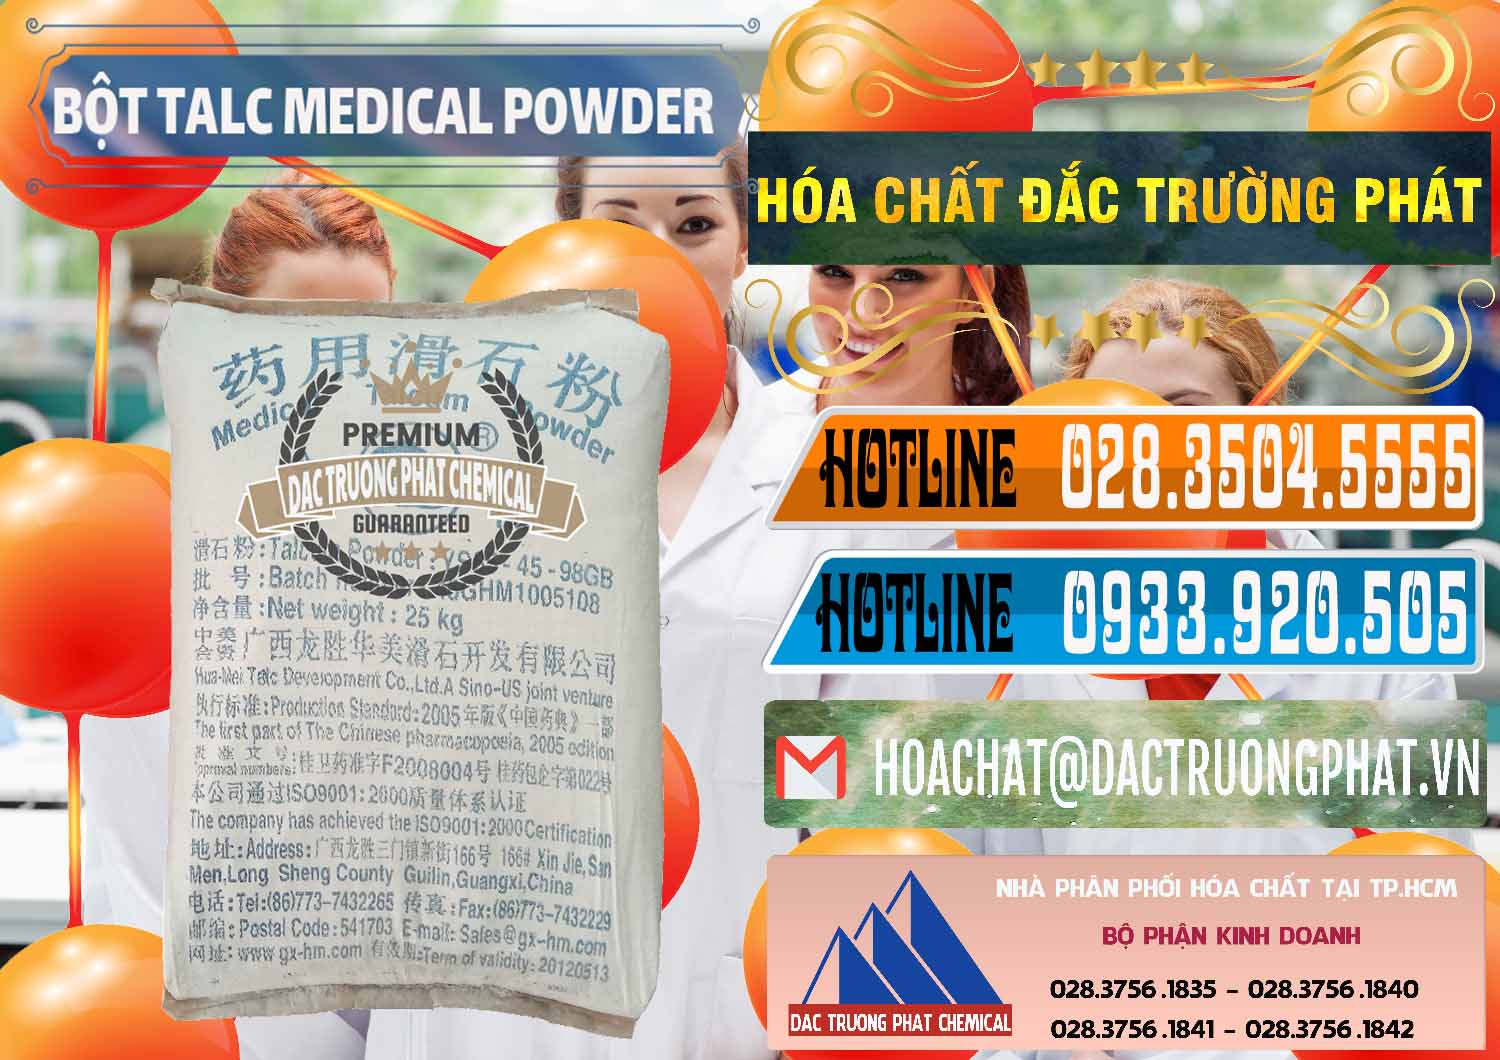 Nơi bán _ cung ứng Bột Talc Medical Powder Trung Quốc China - 0036 - Đơn vị cung cấp và phân phối hóa chất tại TP.HCM - stmp.net